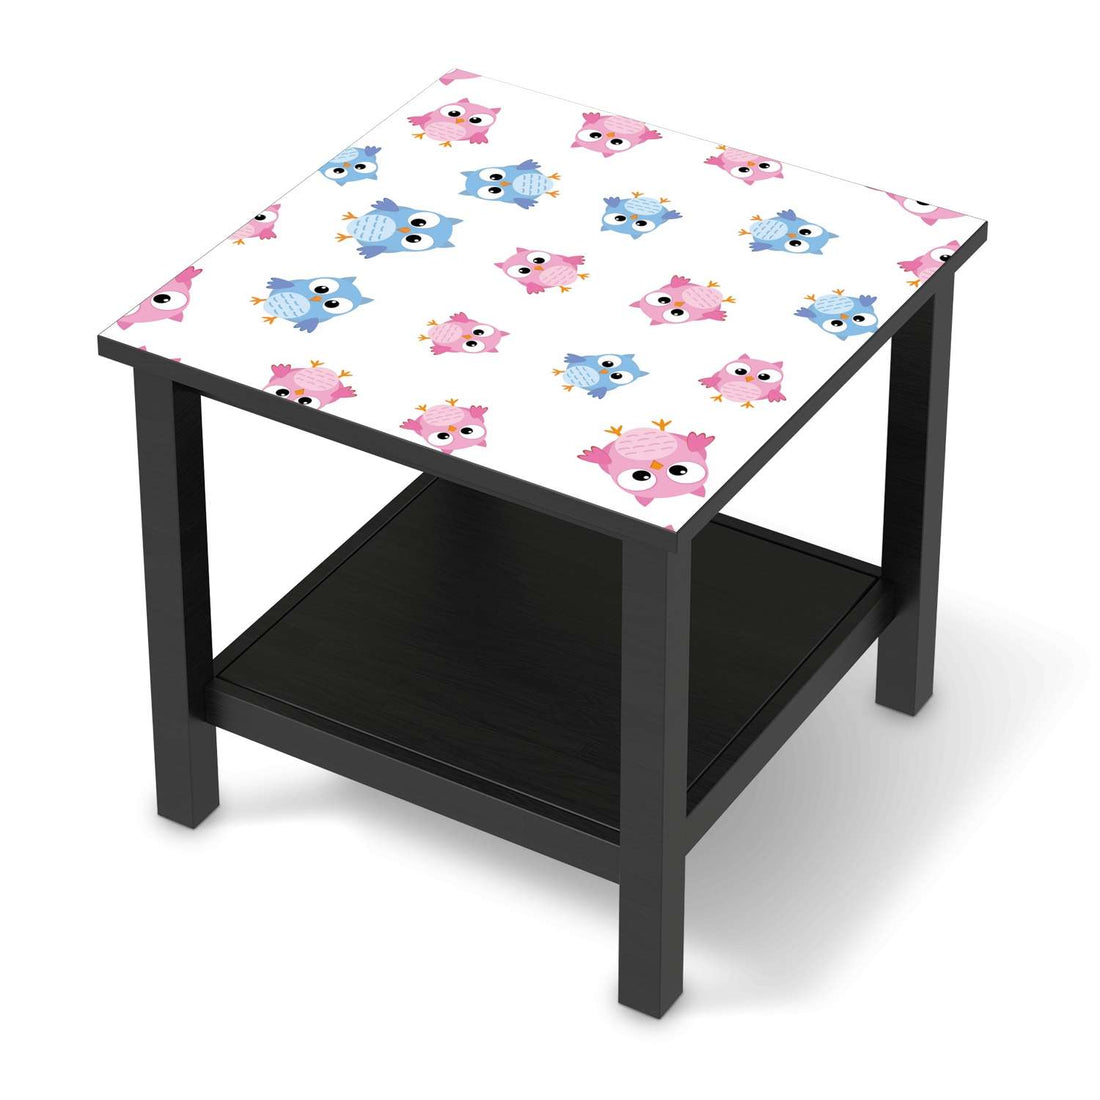 Möbel Klebefolie Eulenparty - IKEA Hemnes Beistelltisch 55x55 cm - schwarz